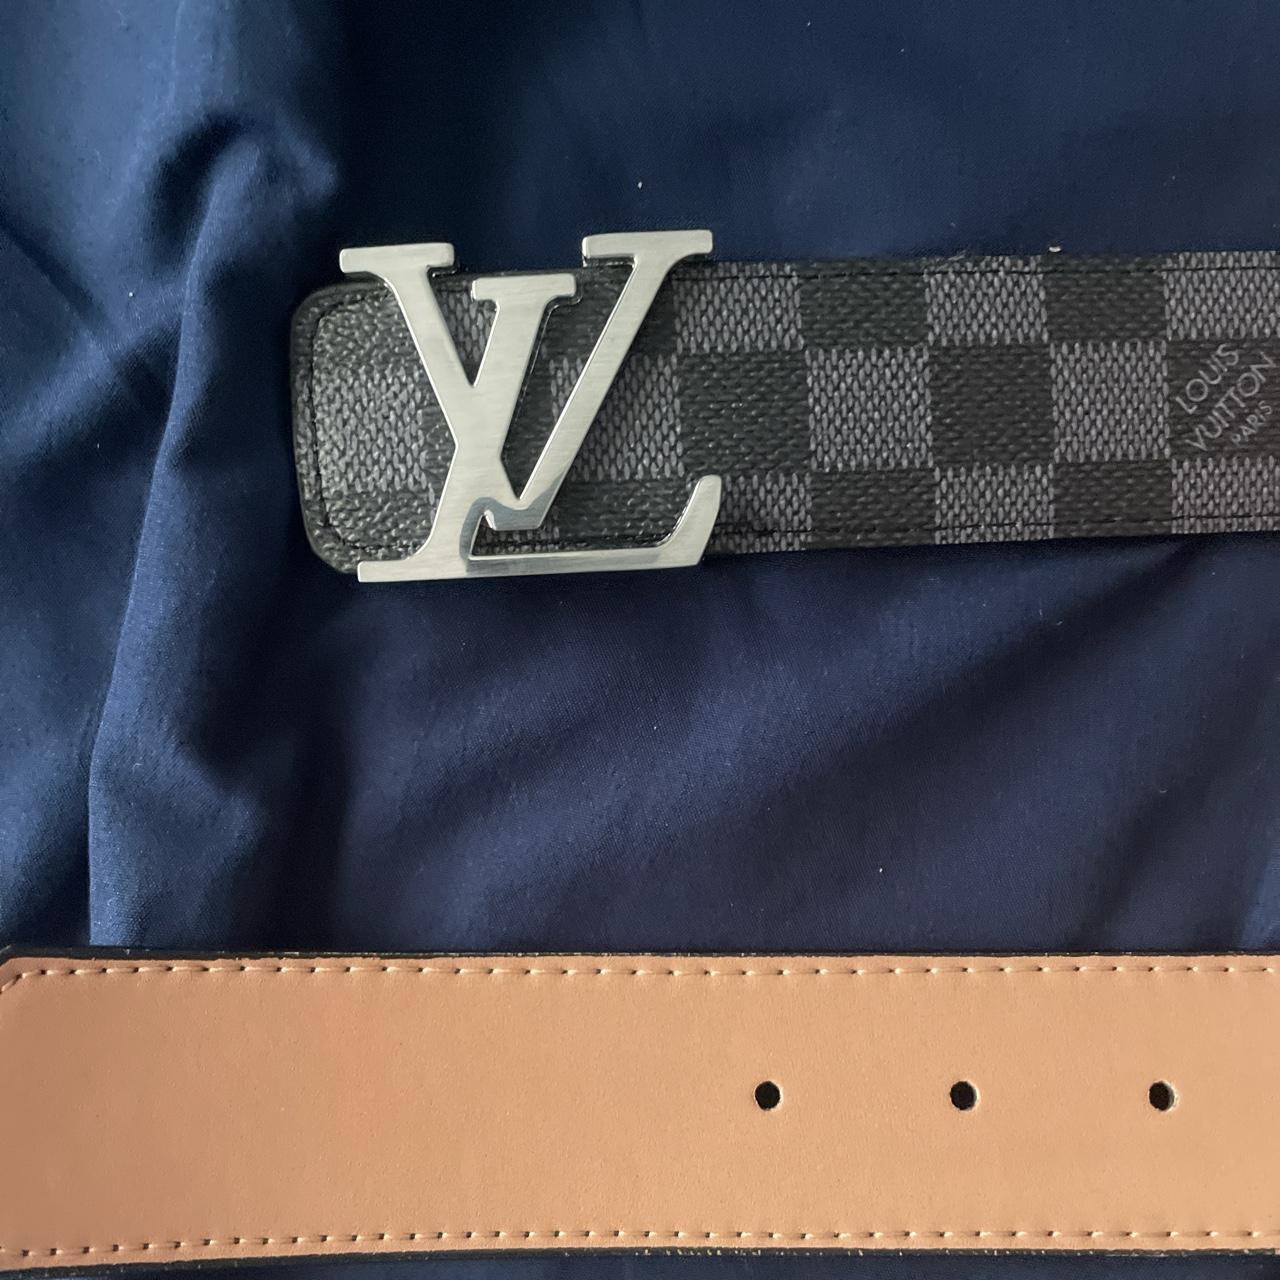 Louis Vuitton belt (checkered) - Depop